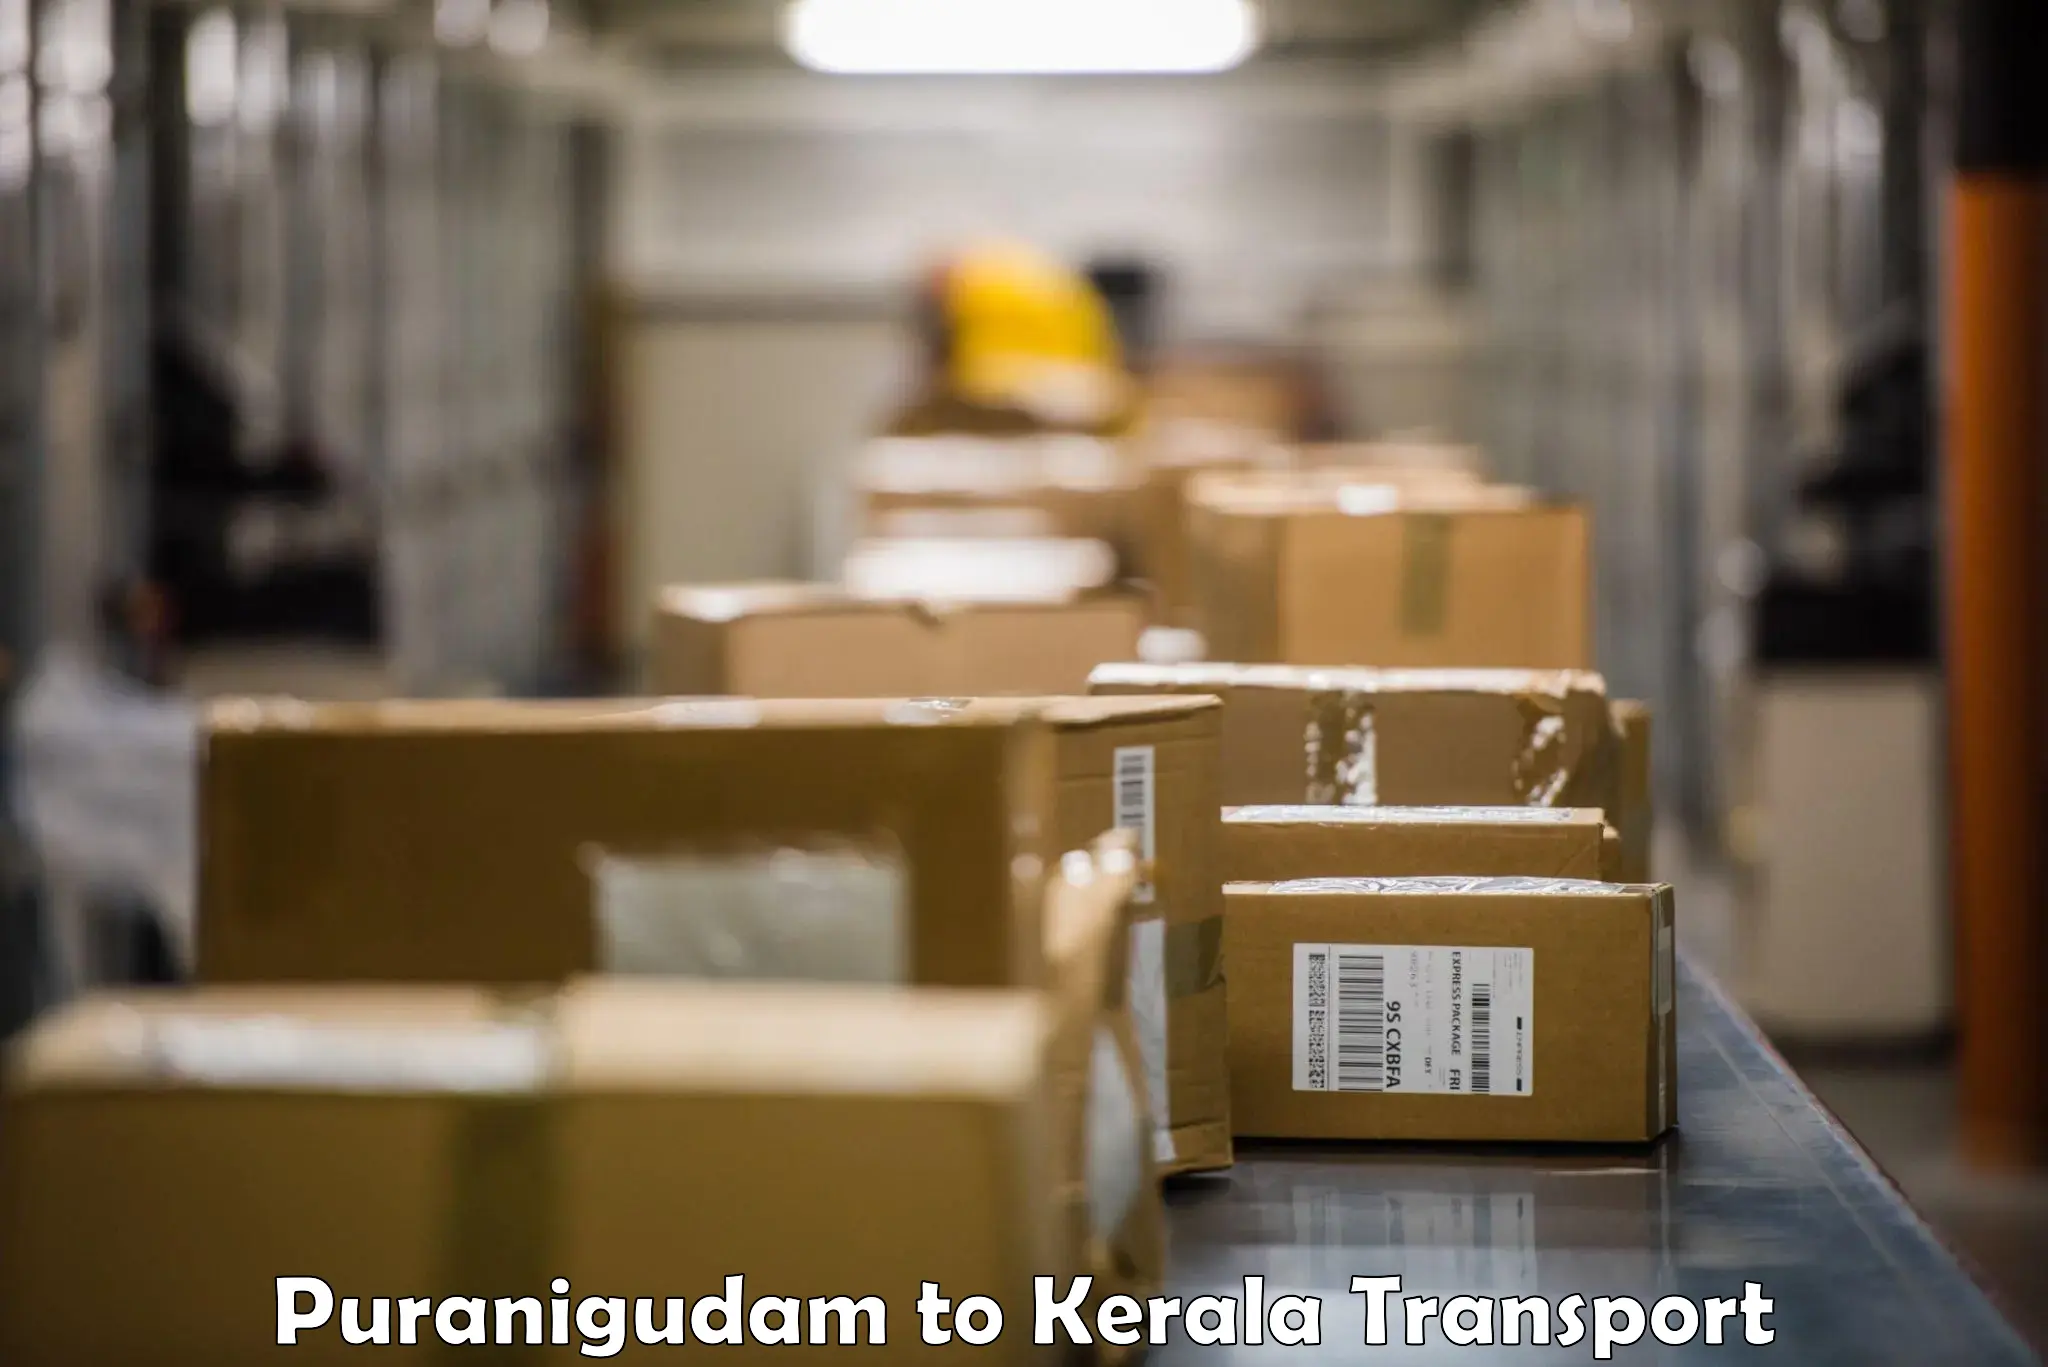 Nearest transport service Puranigudam to Thrissur